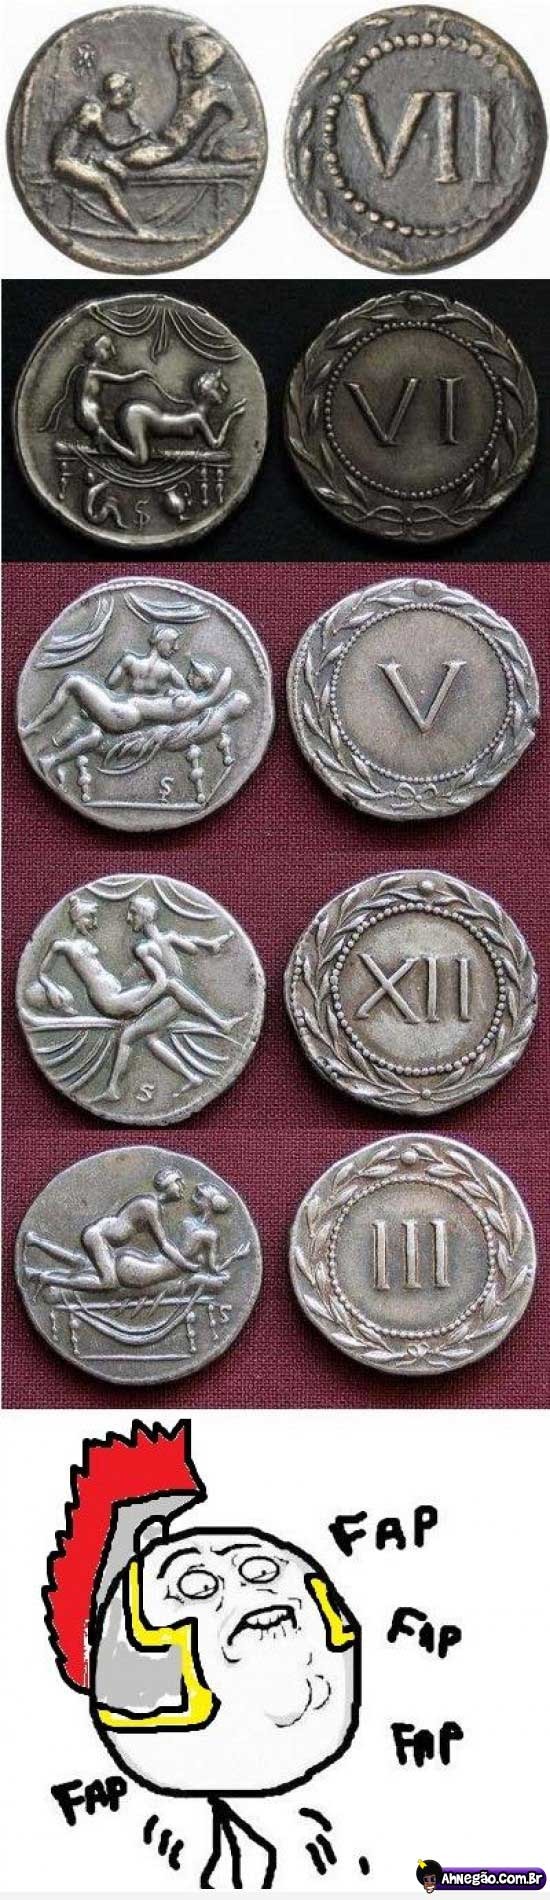 moedas romanas - meme